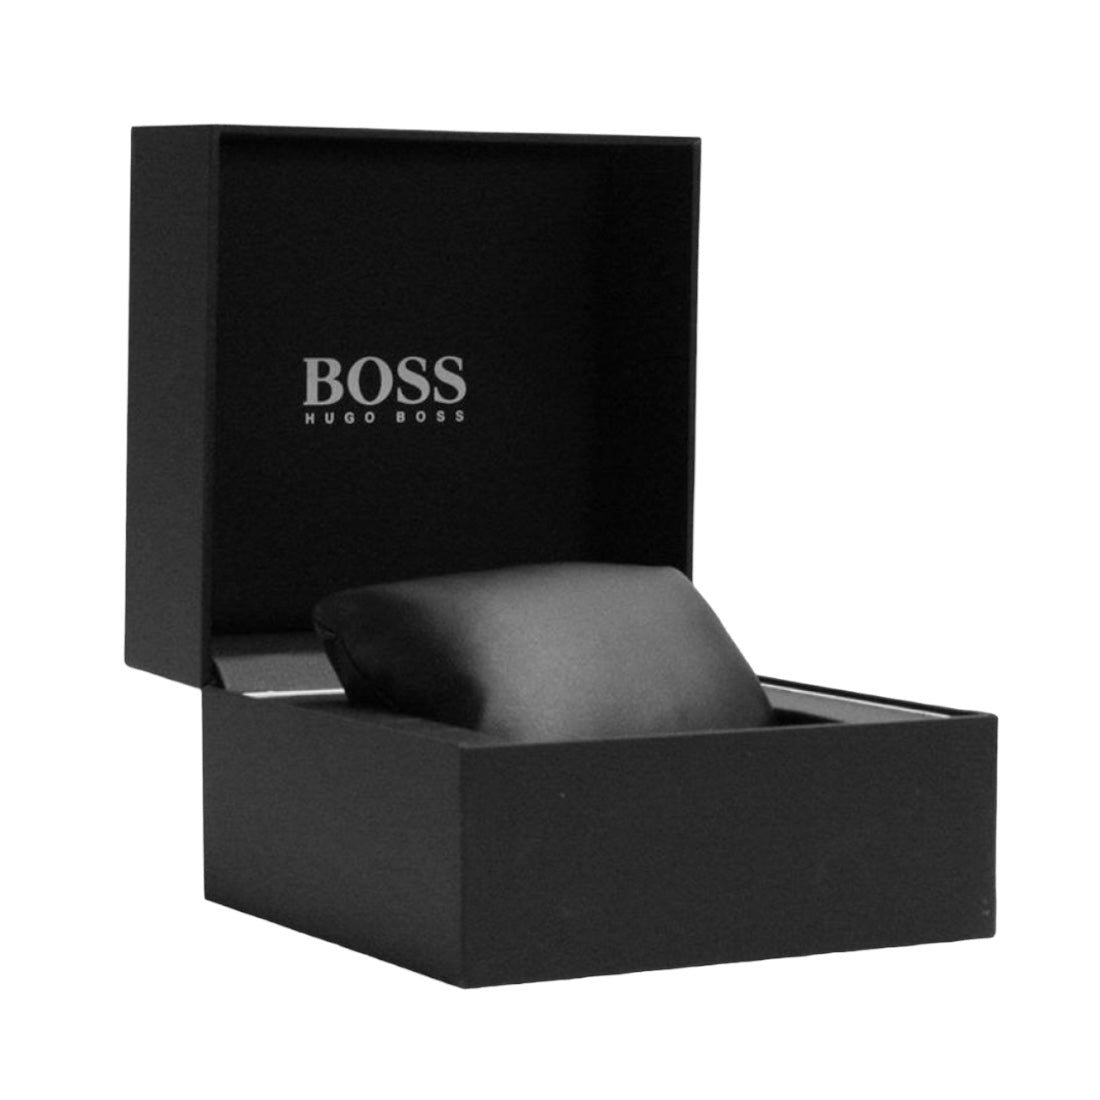 Hugo Boss 1513628 Men's Watch